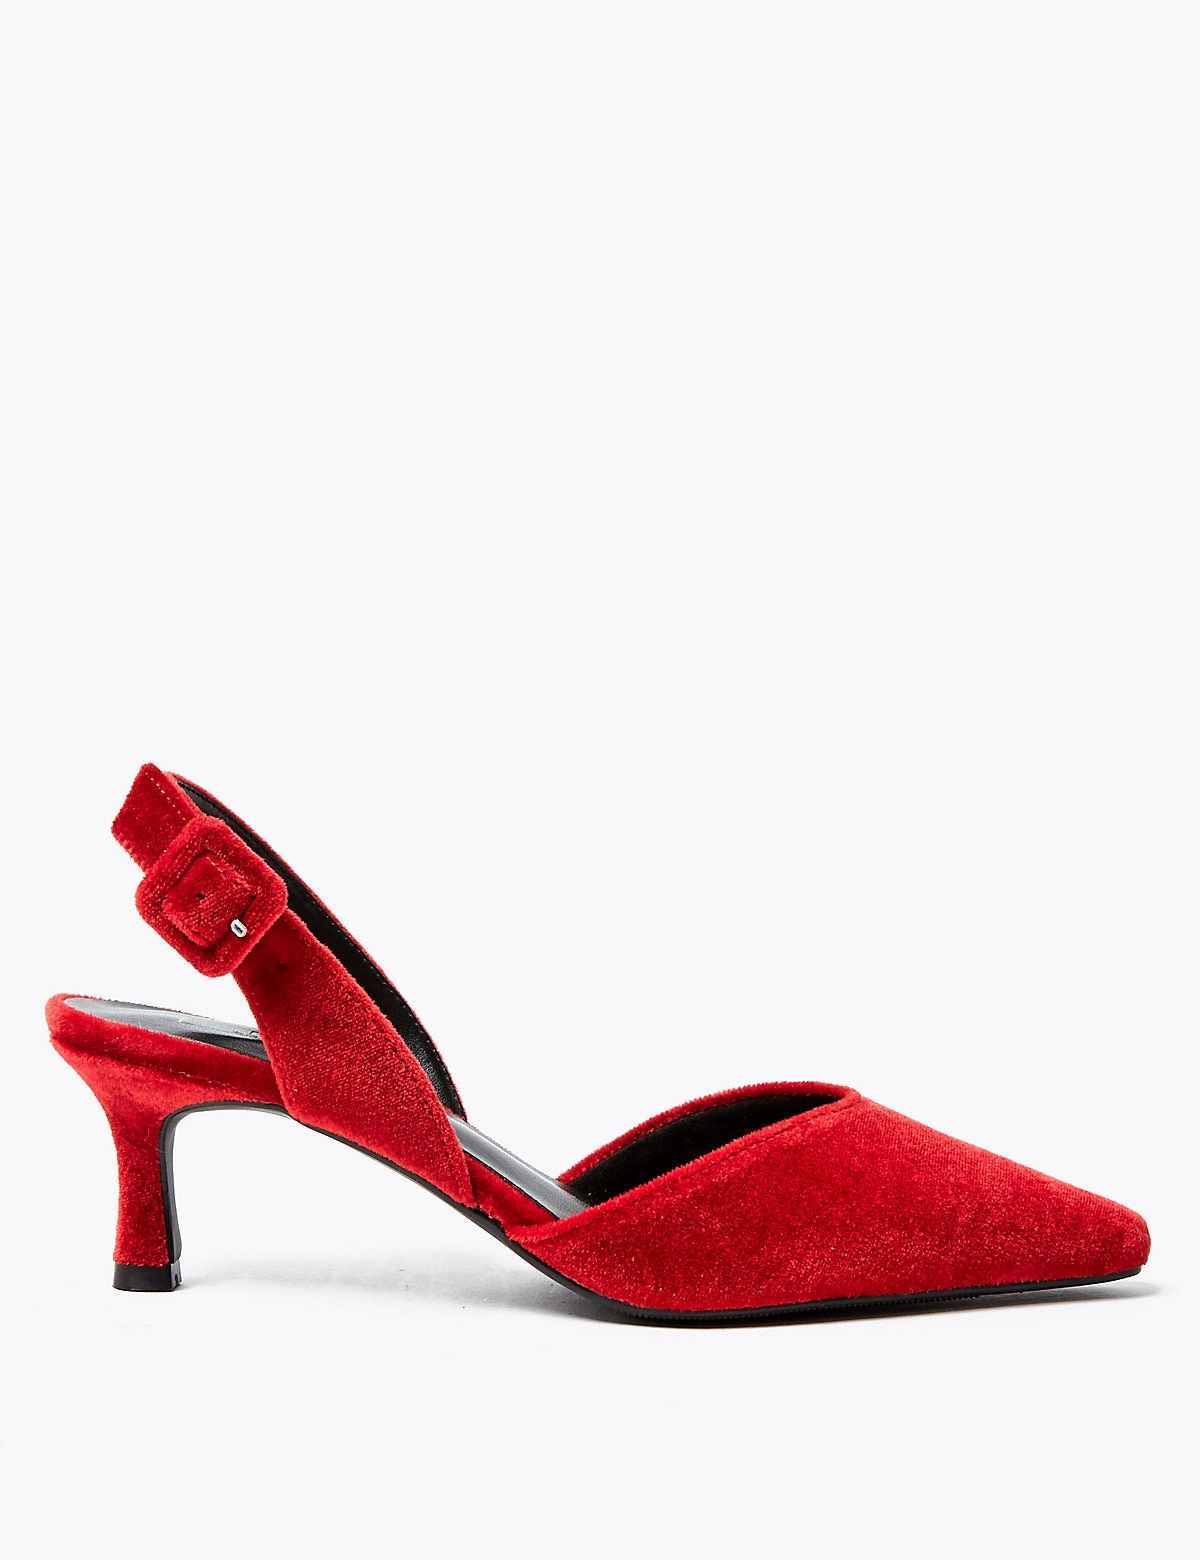 m&s red heels